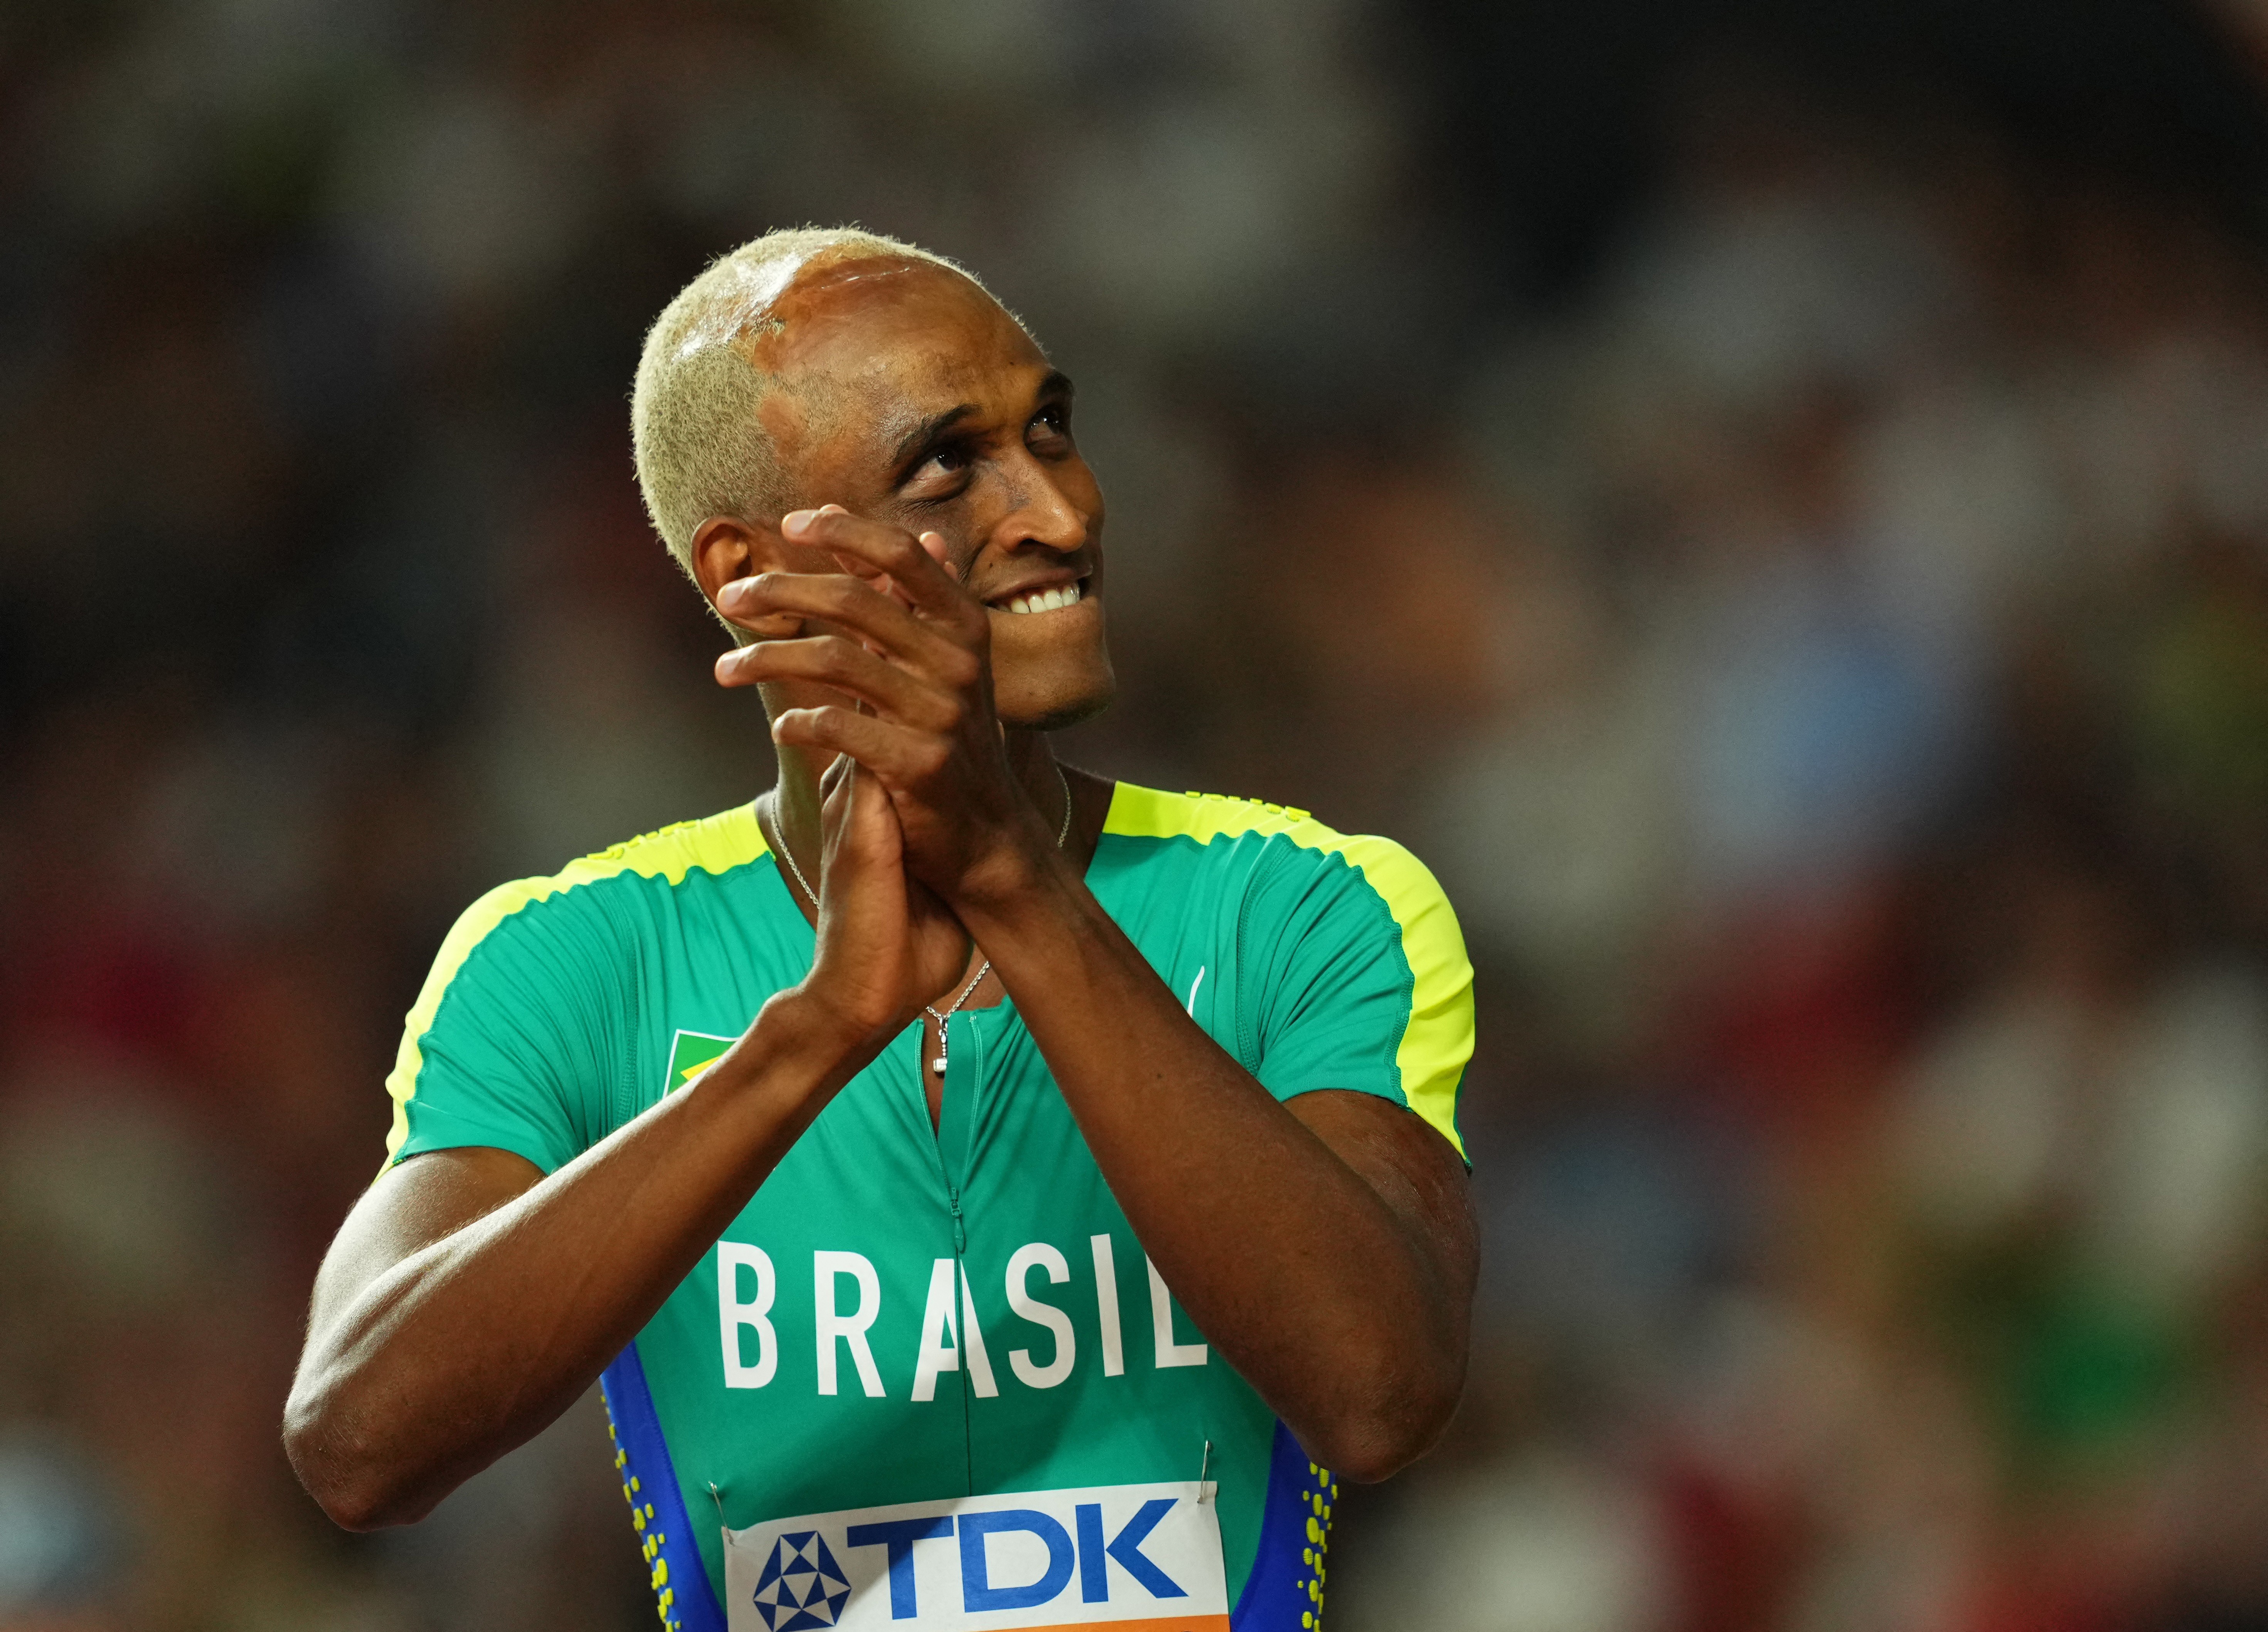 Alison dos Santos abre a temporada com vitória nos 400 metros rasos